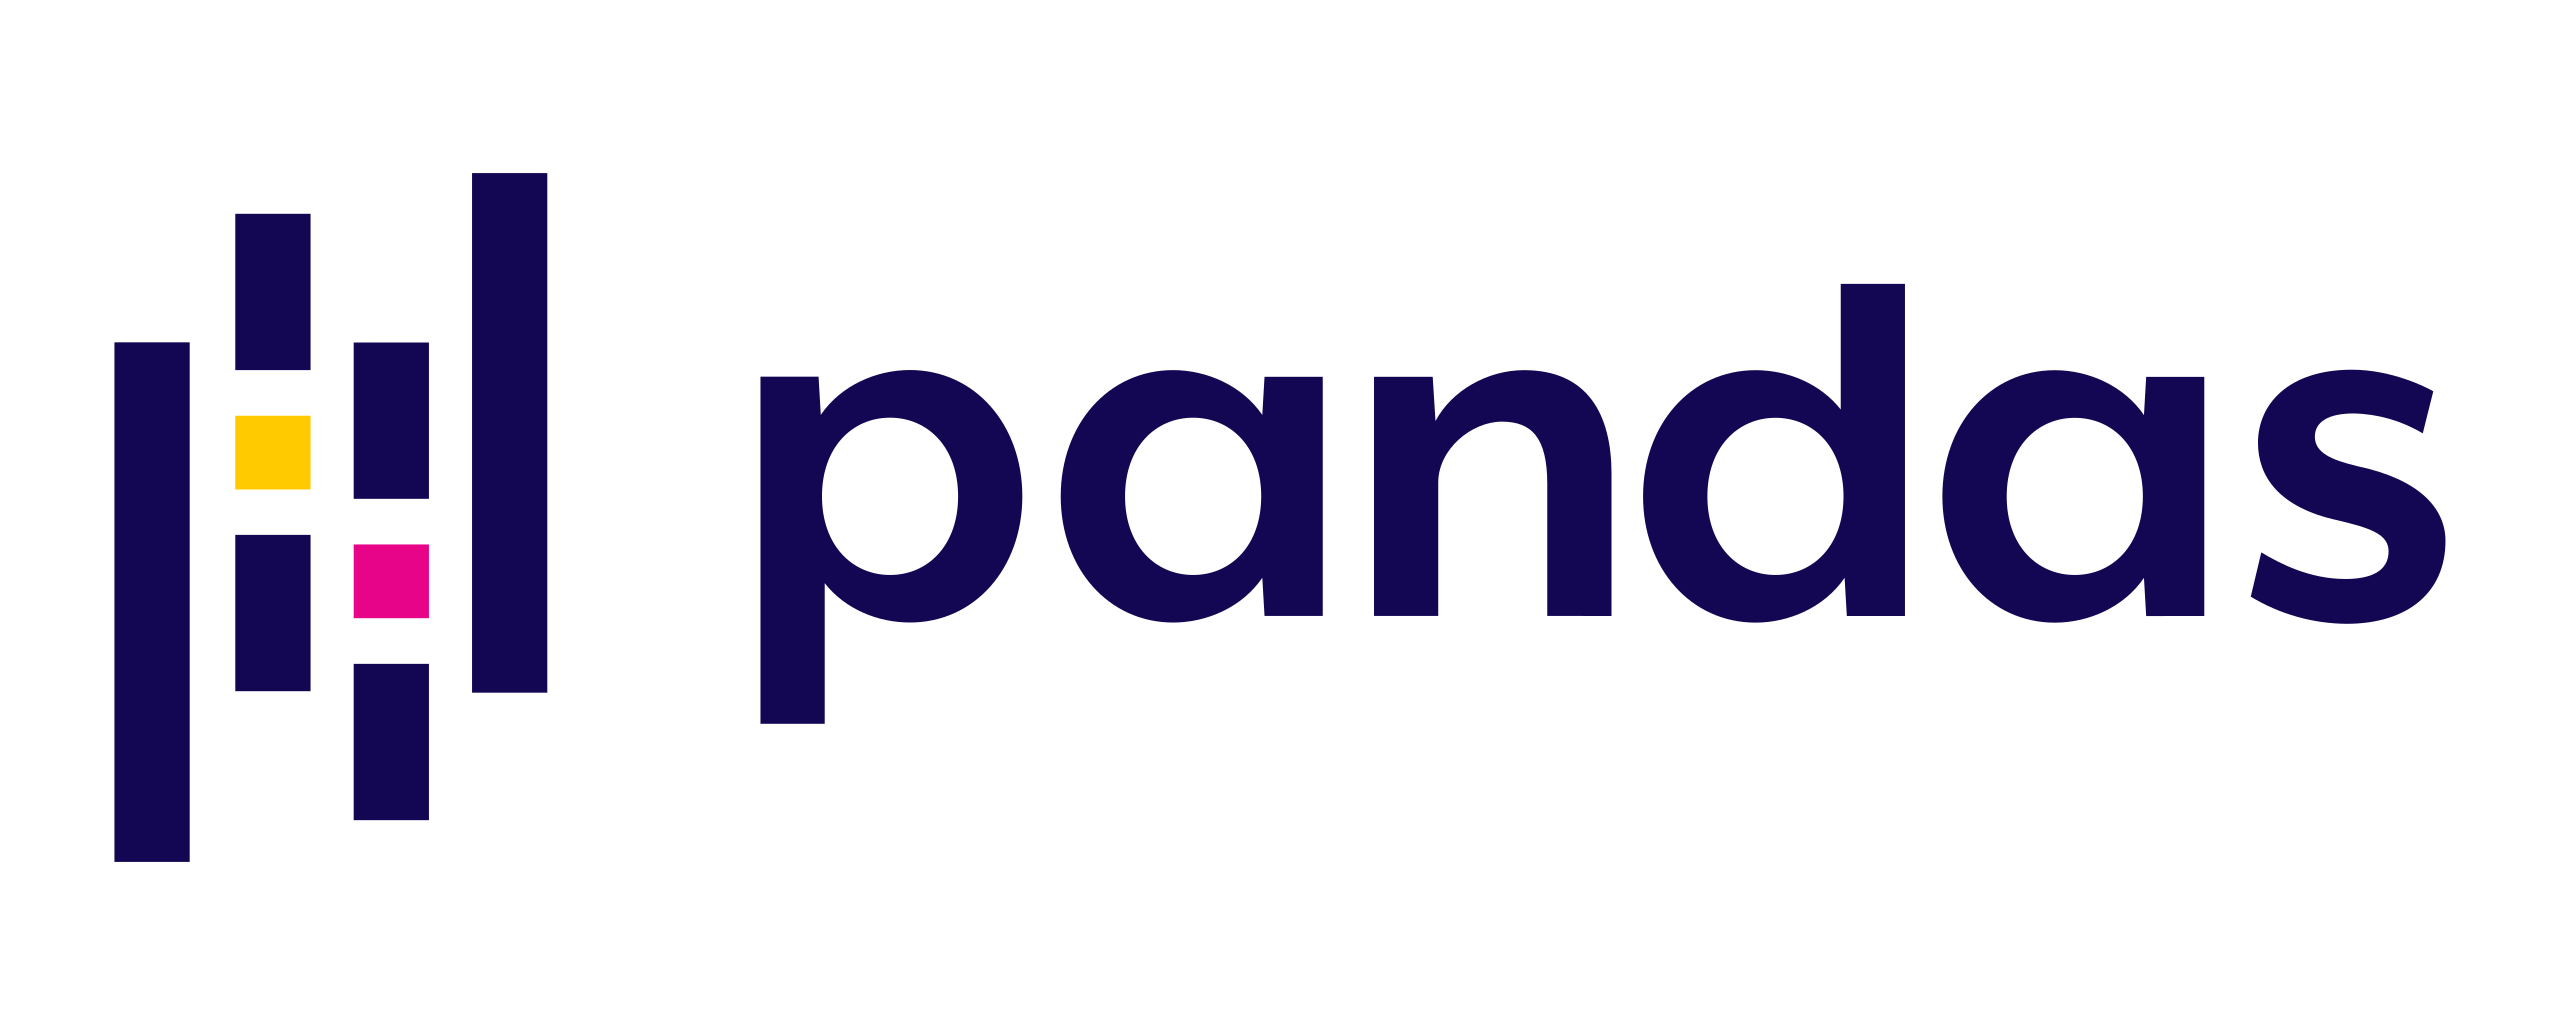 Pandas_logo.png